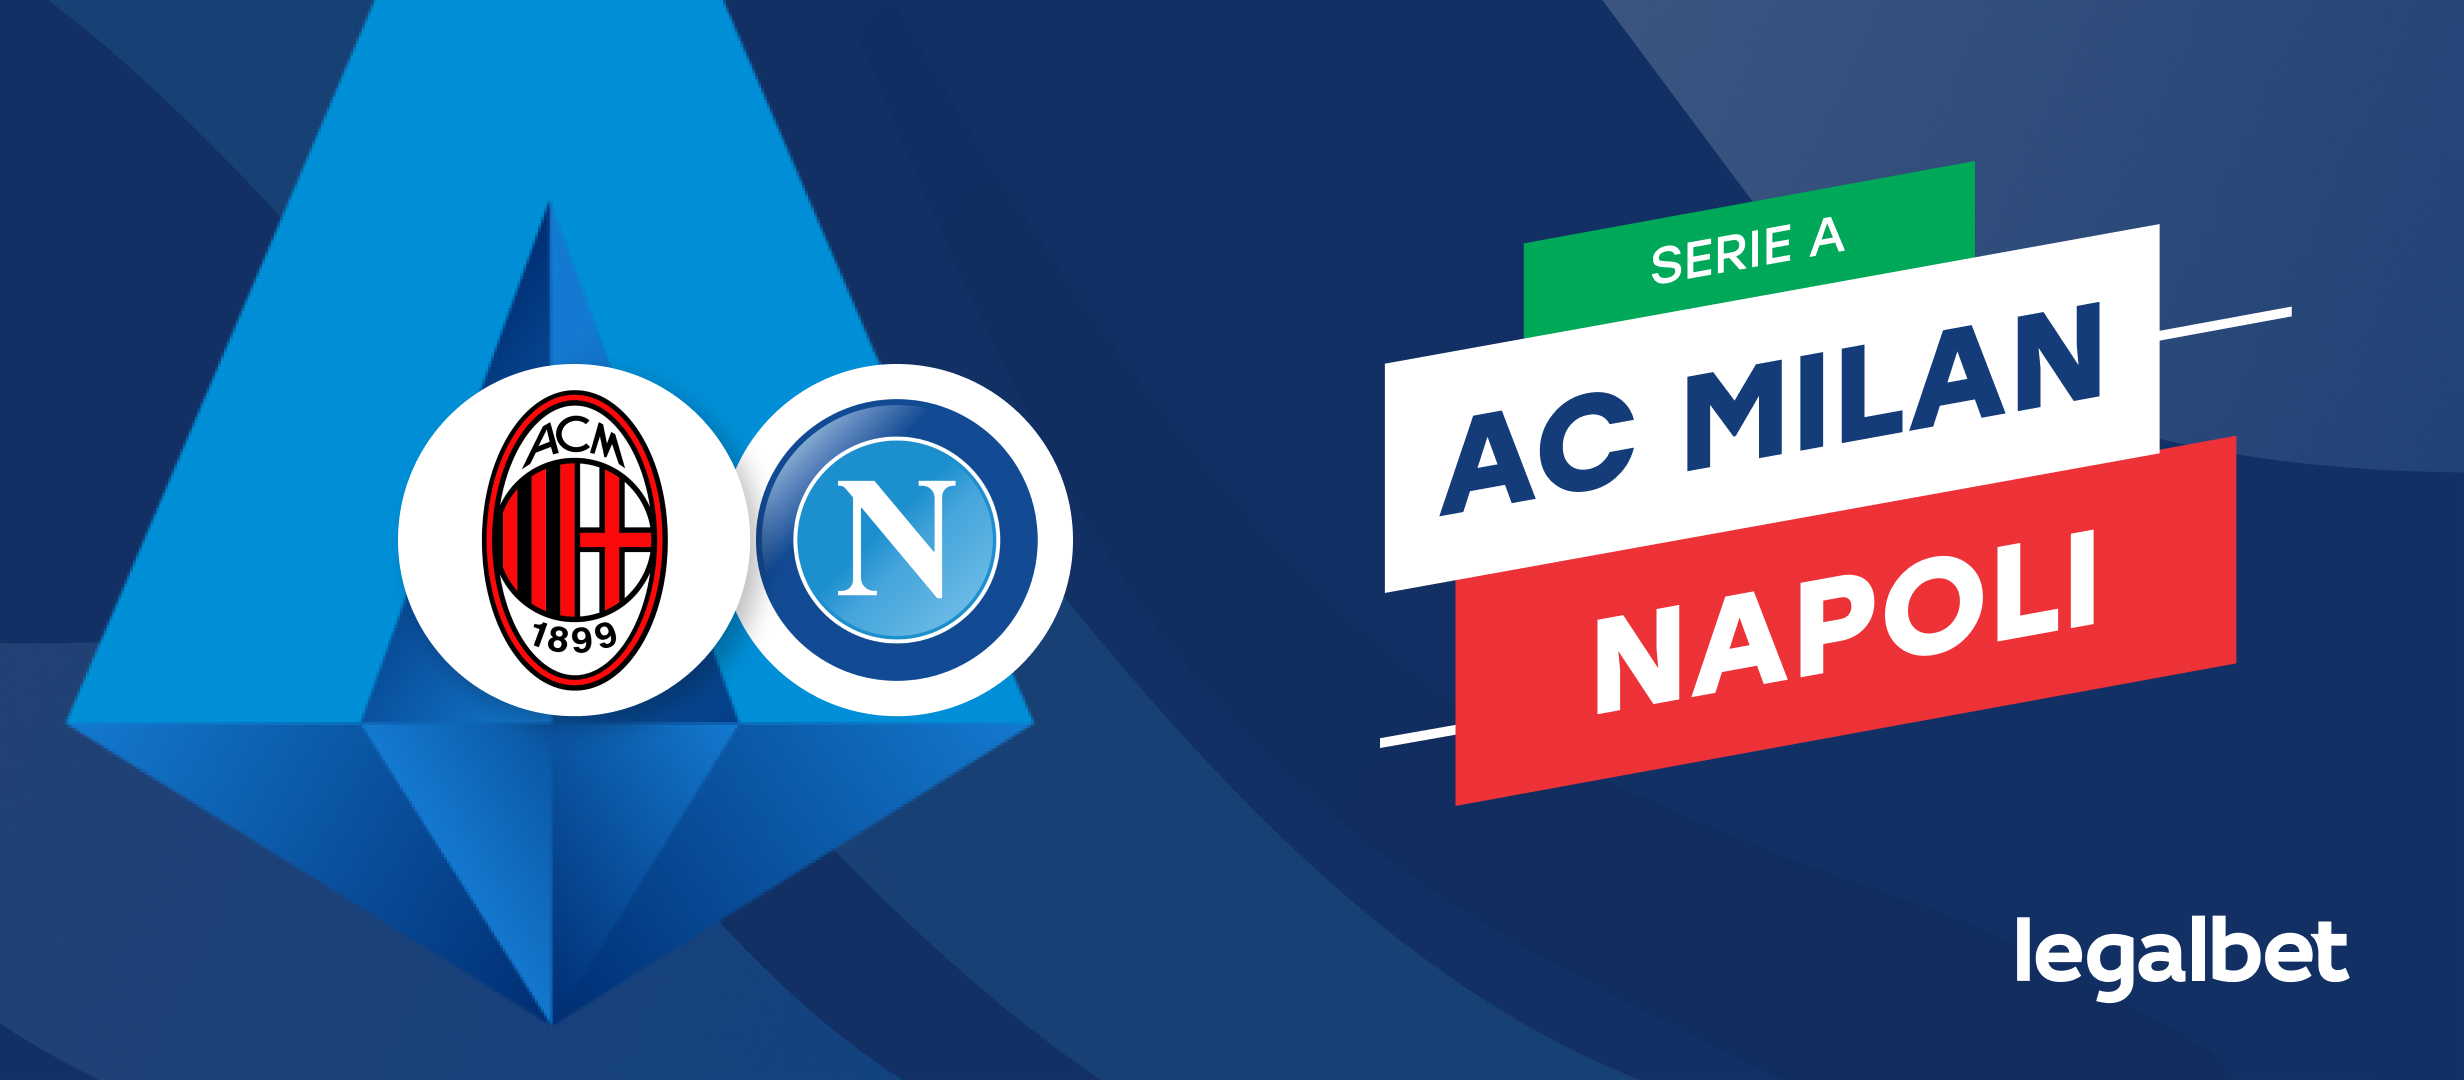 Apuestas y cuotas AC Milan - Napoli, Serie A 2021/22